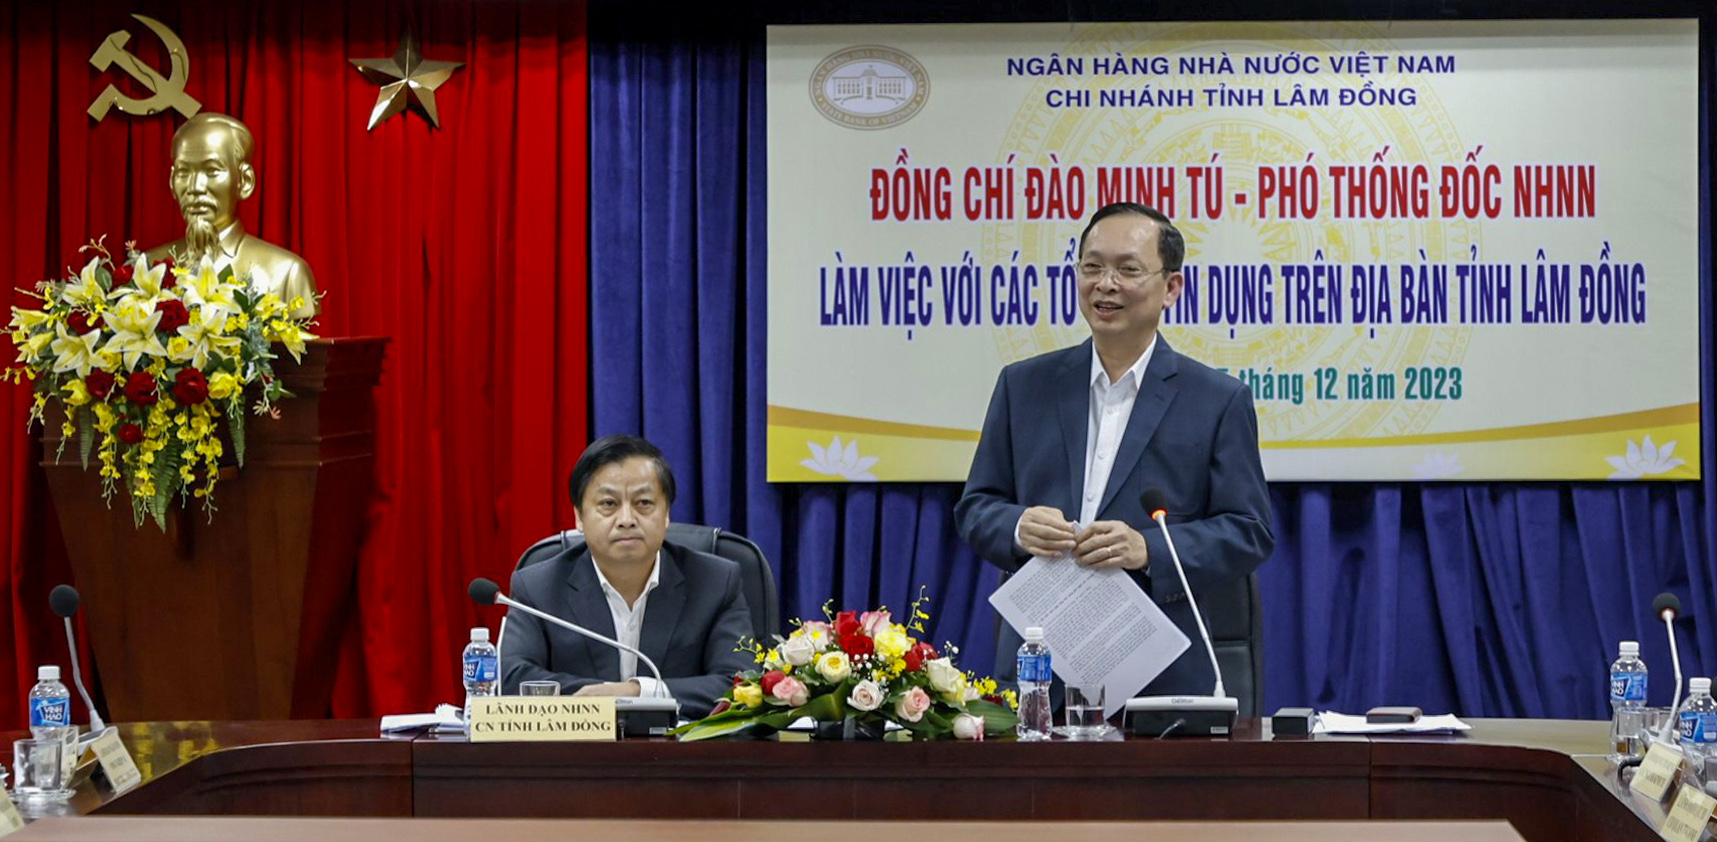 Phó Thống đốc Ngân hàng Nhà nước làm việc với các tổ chức tín dụng trên địa bàn tỉnh Lâm Đồng